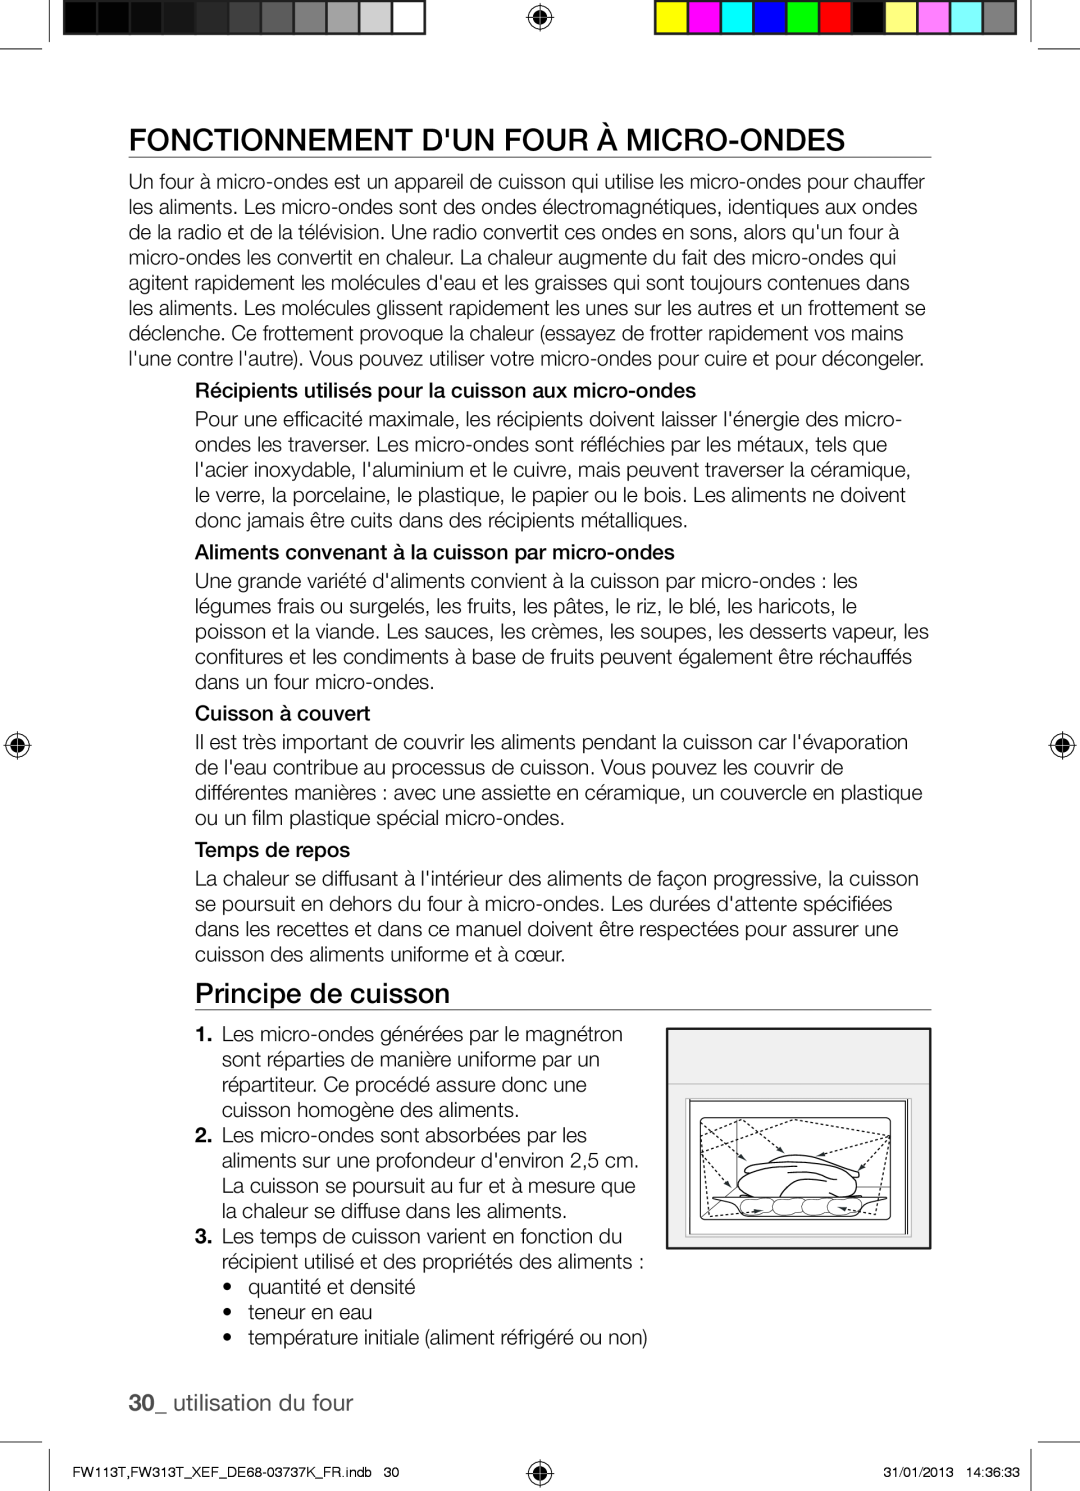 Samsung FW113T002/XEF manual Fonctionnement Dun Four À Micro-Ondes, Principe de cuisson, utilisation du four 